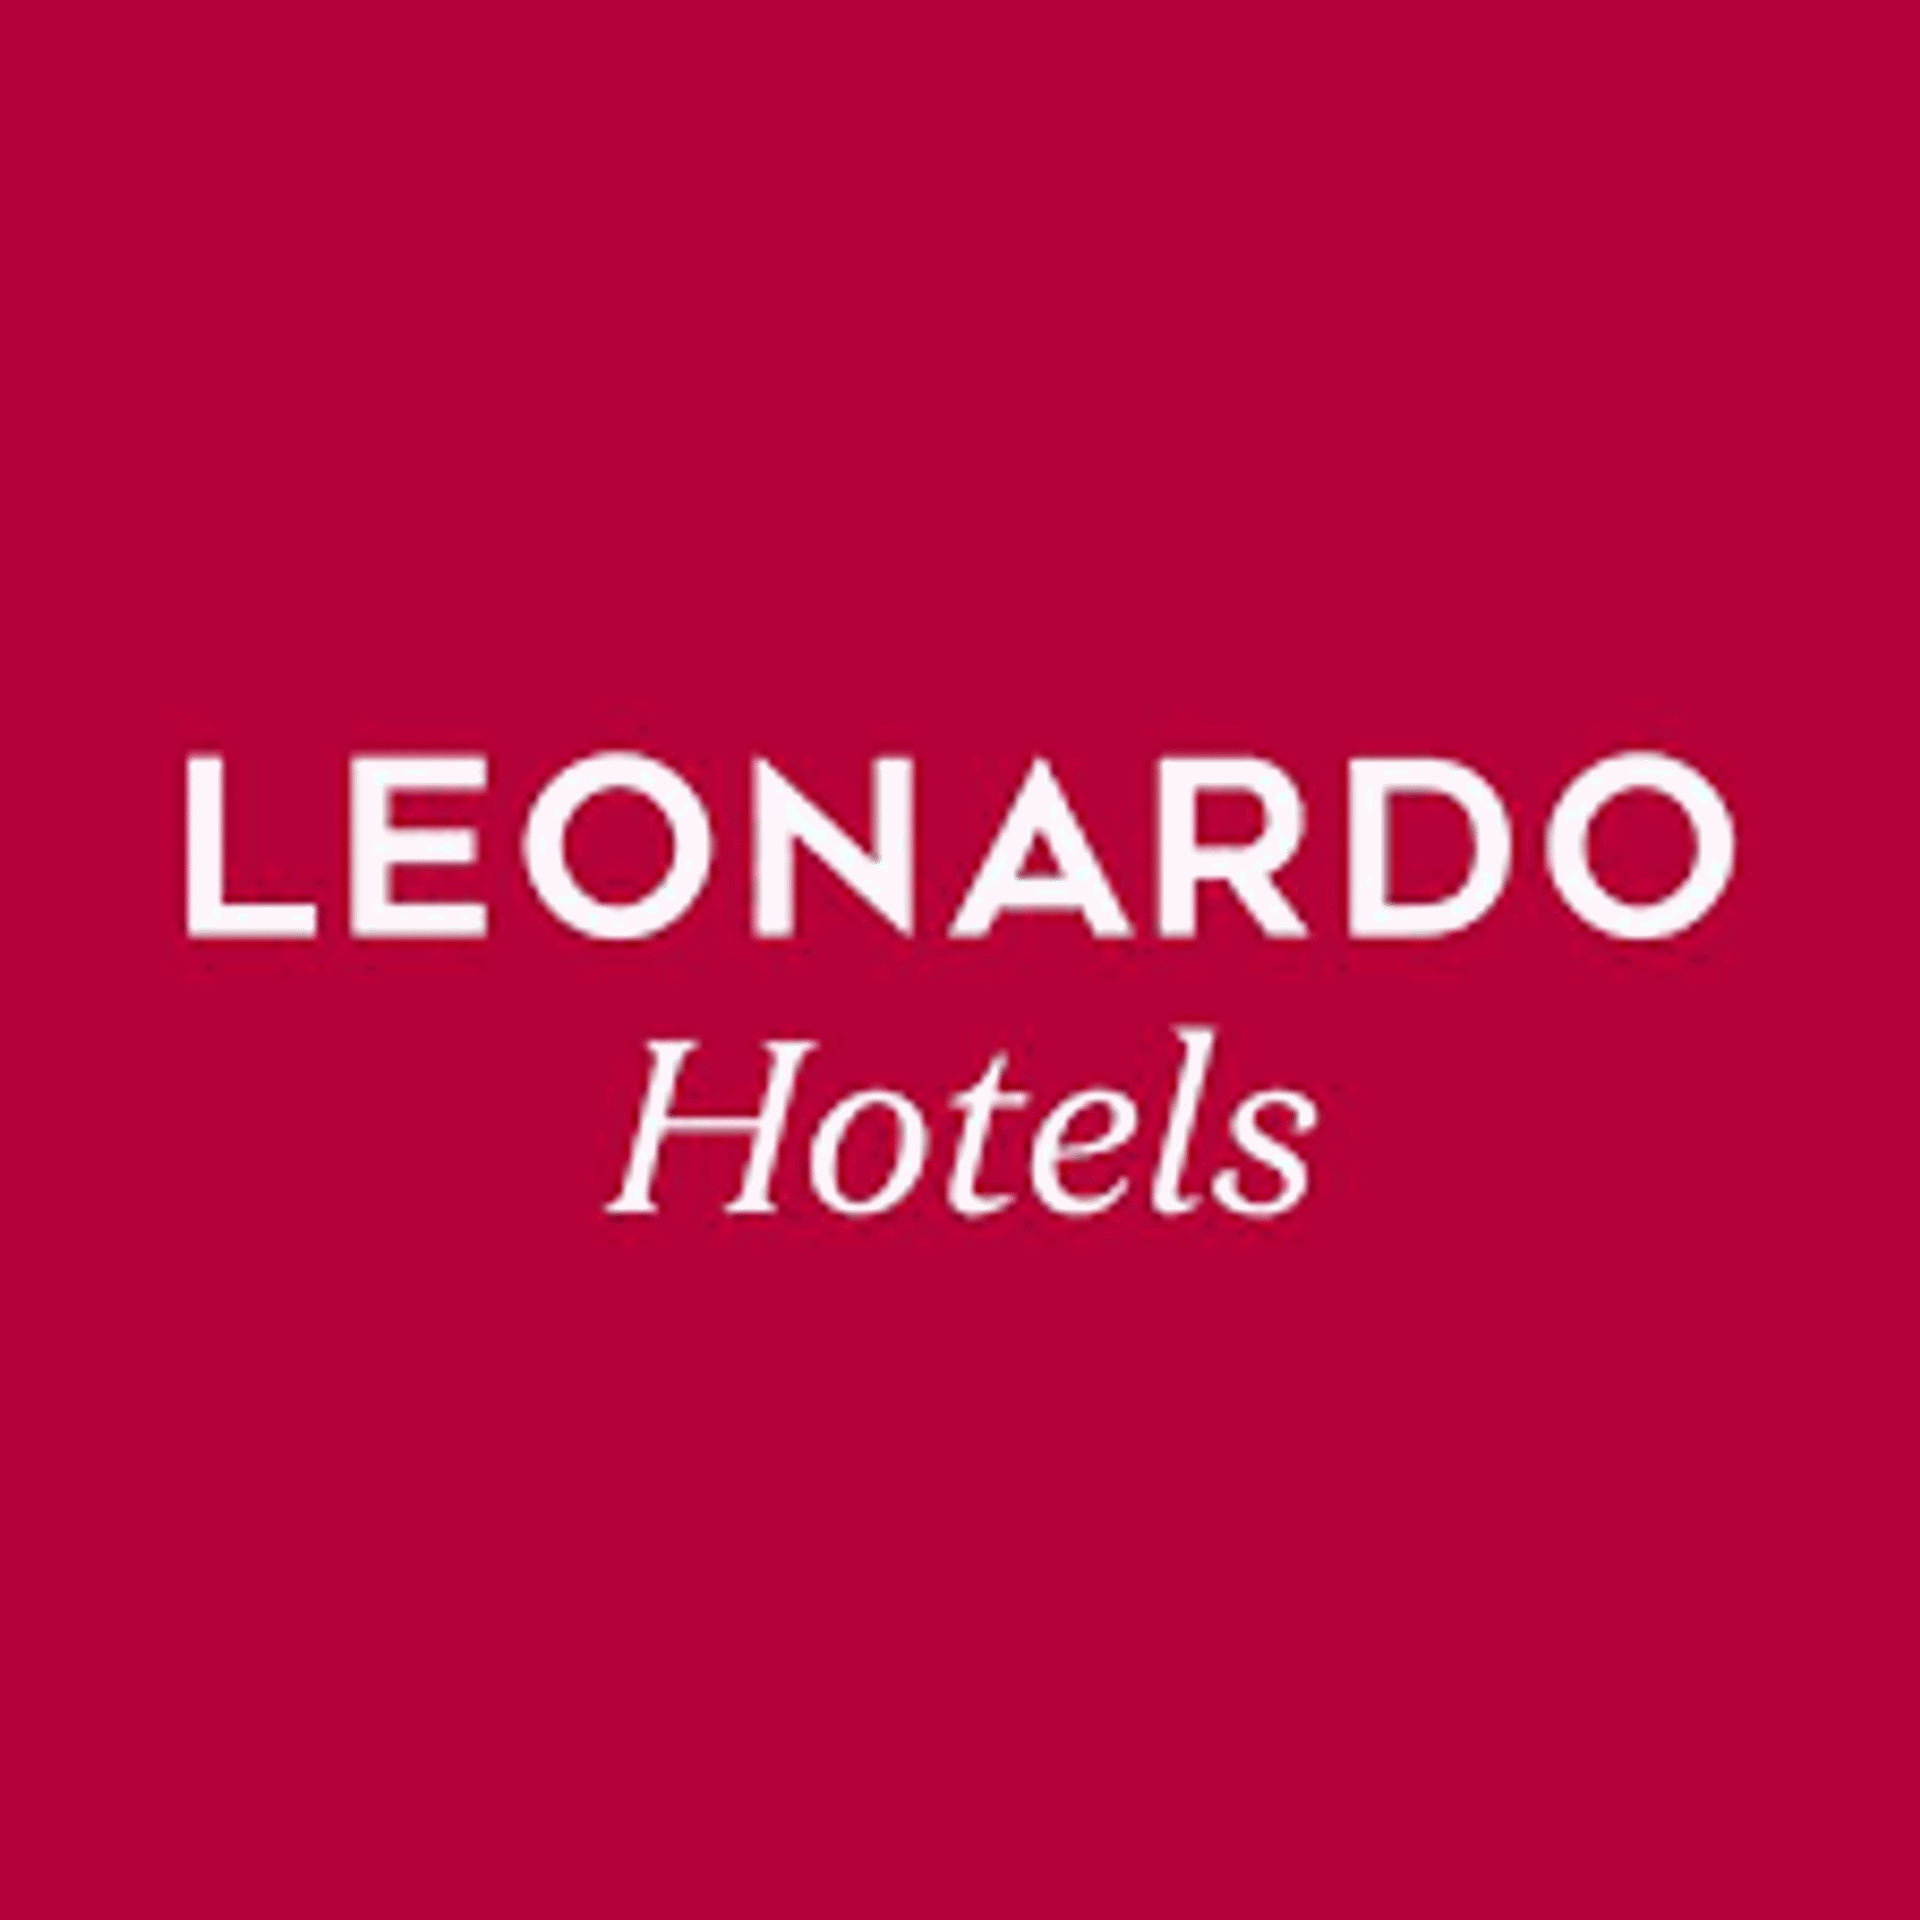 Leonardo Hotels logo